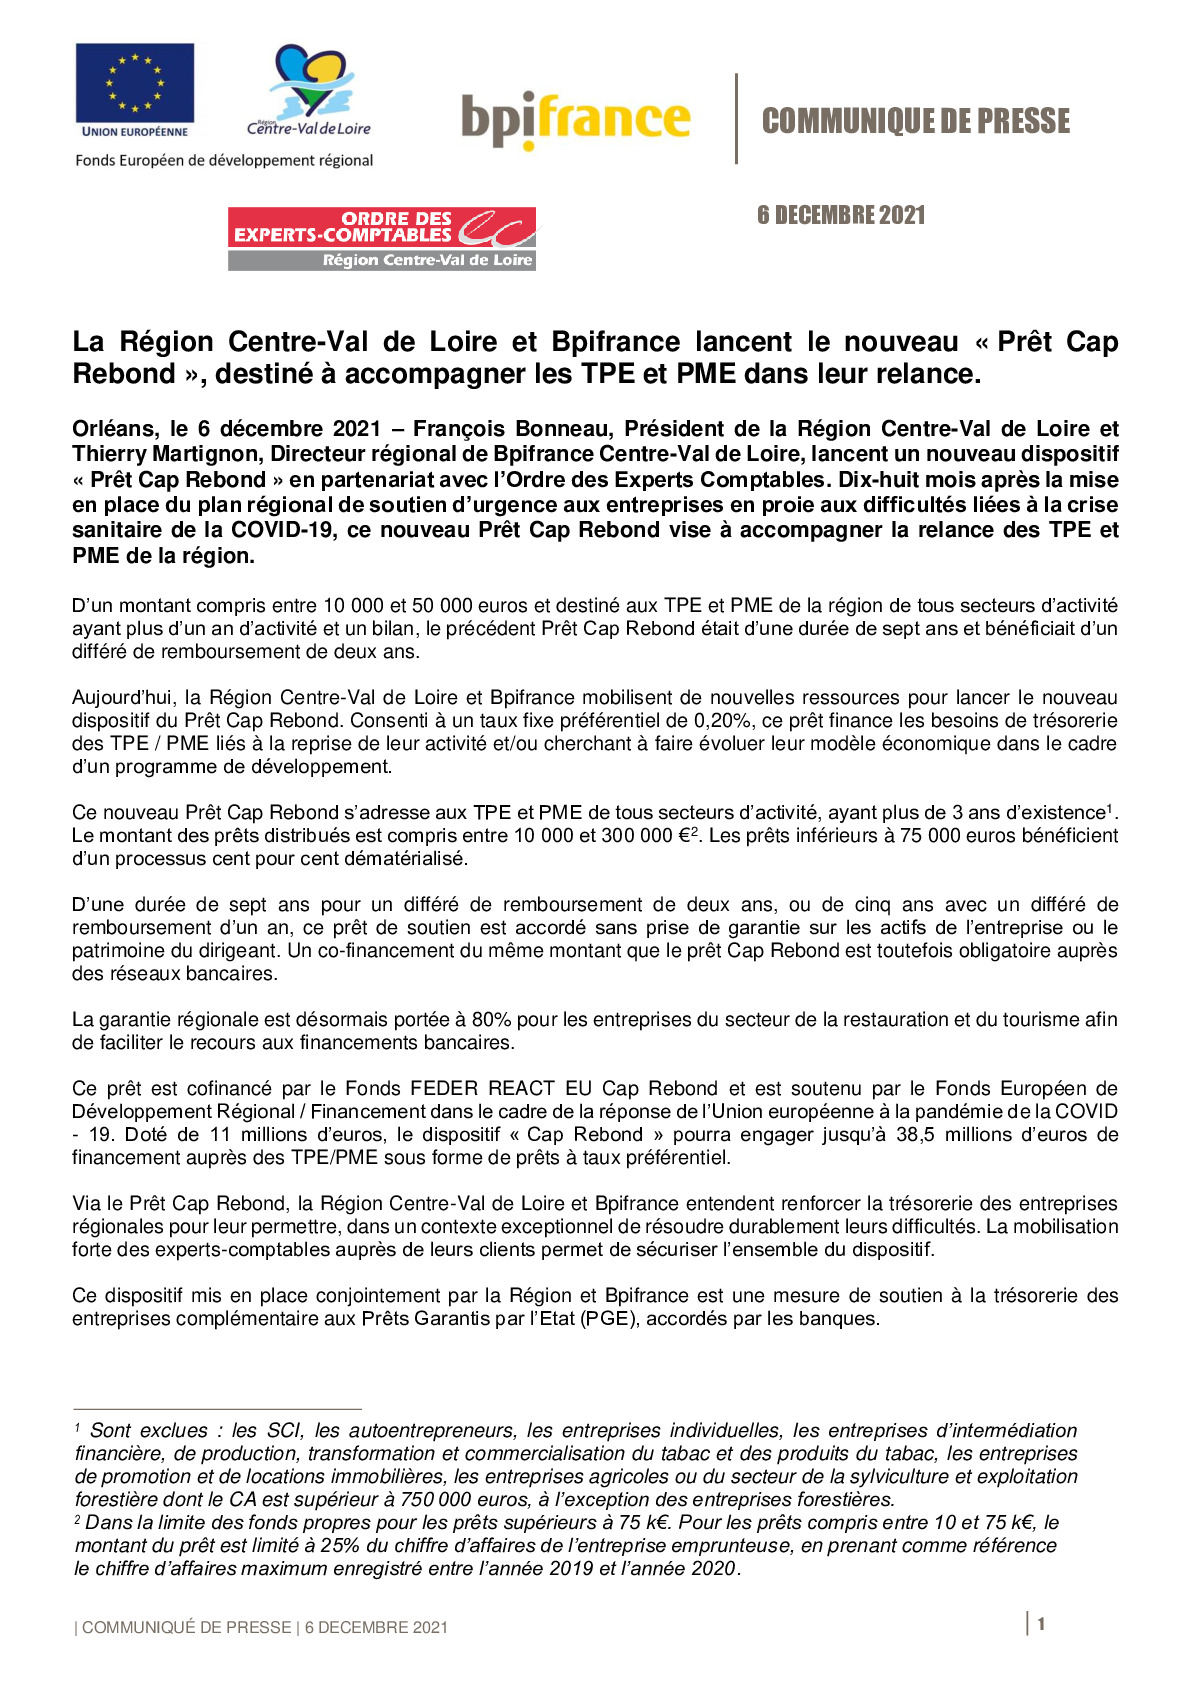 2021 11 06 – Bpifrance et la Region CVL lancent le nouveau dispositif du Pret Cap Rebond Centre-Val de Loire-pdf